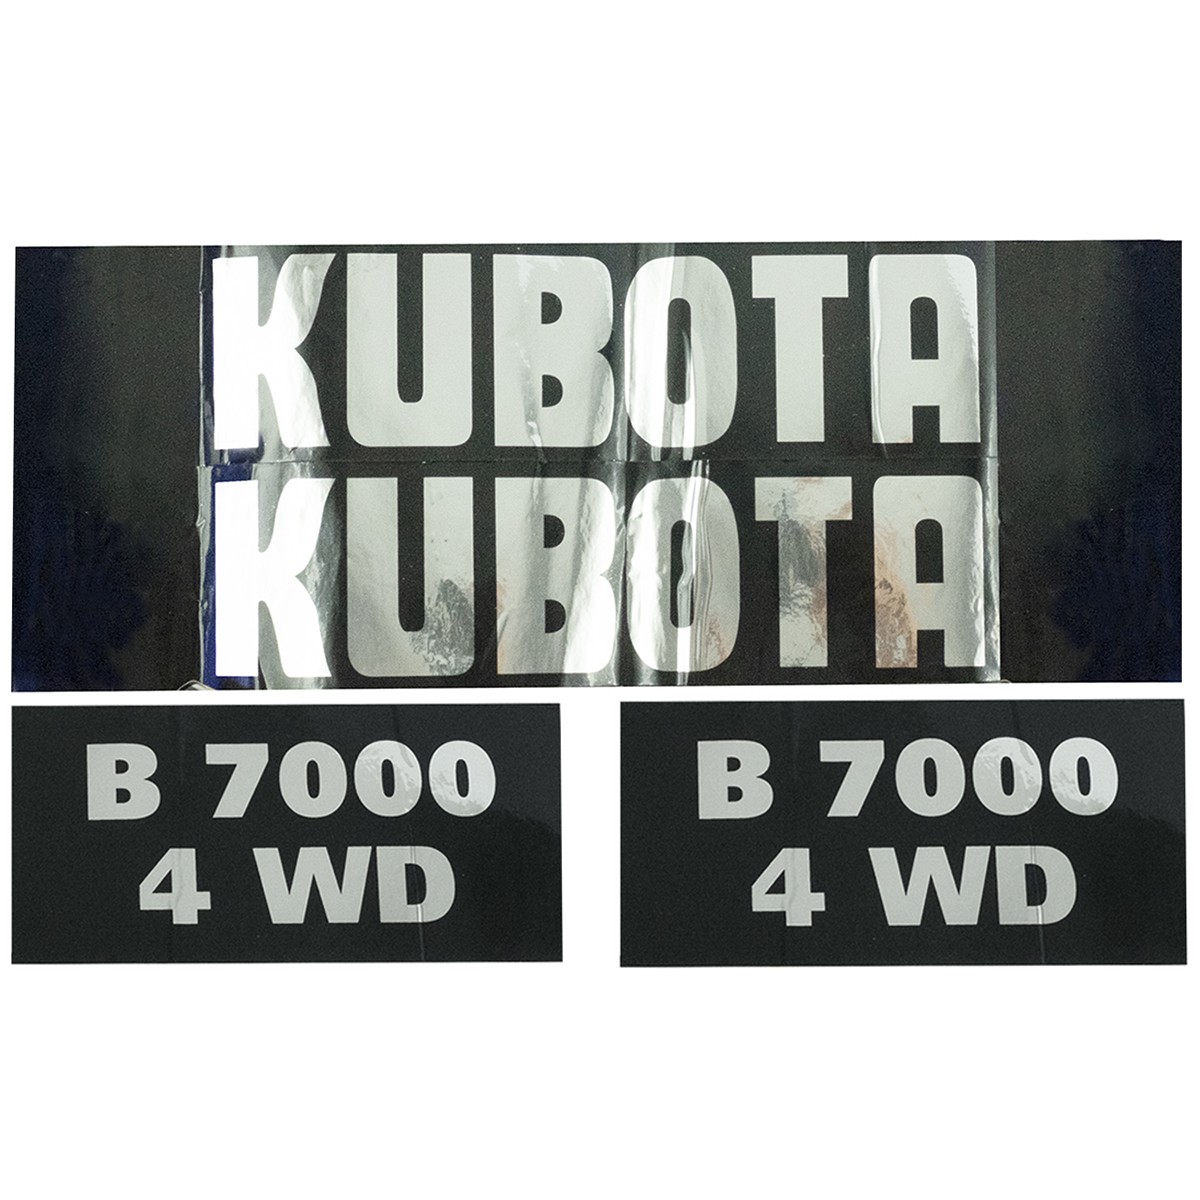 Pegatinas Kubota B7000 4WD